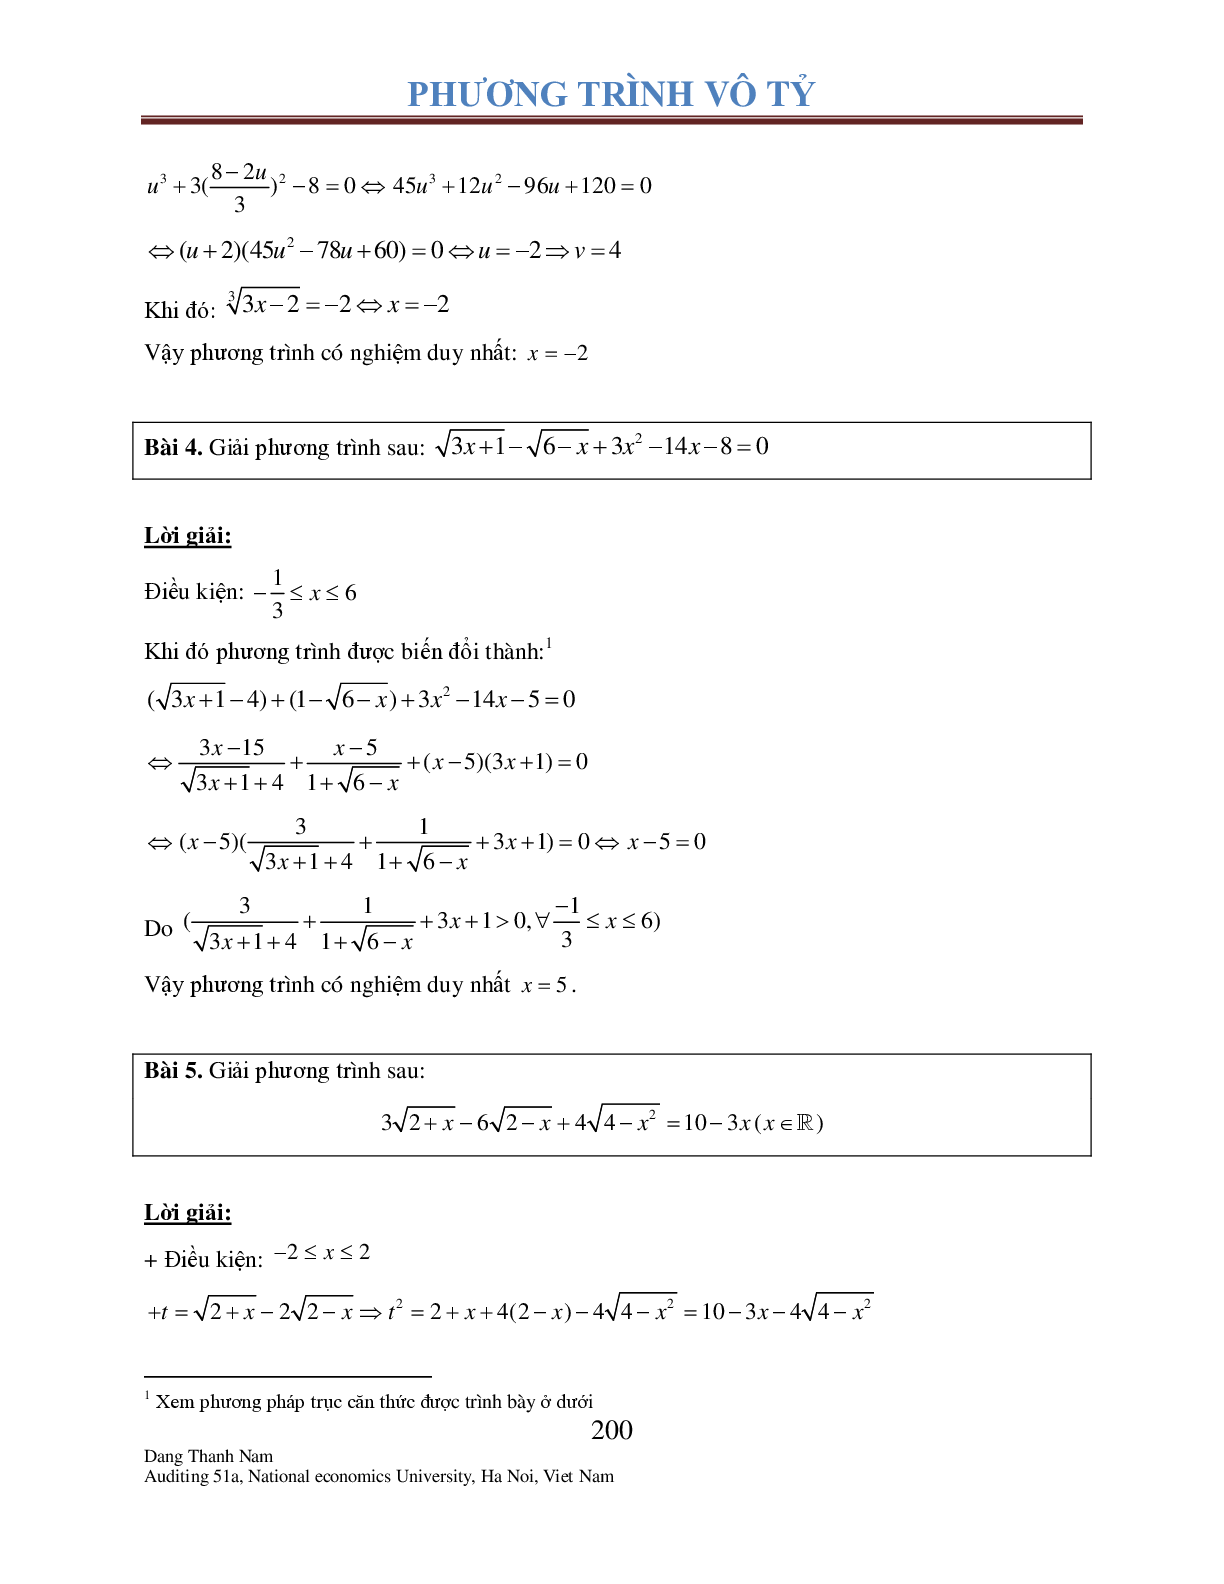 Chuyên đề phương trình Vô tỉ (trang 5)